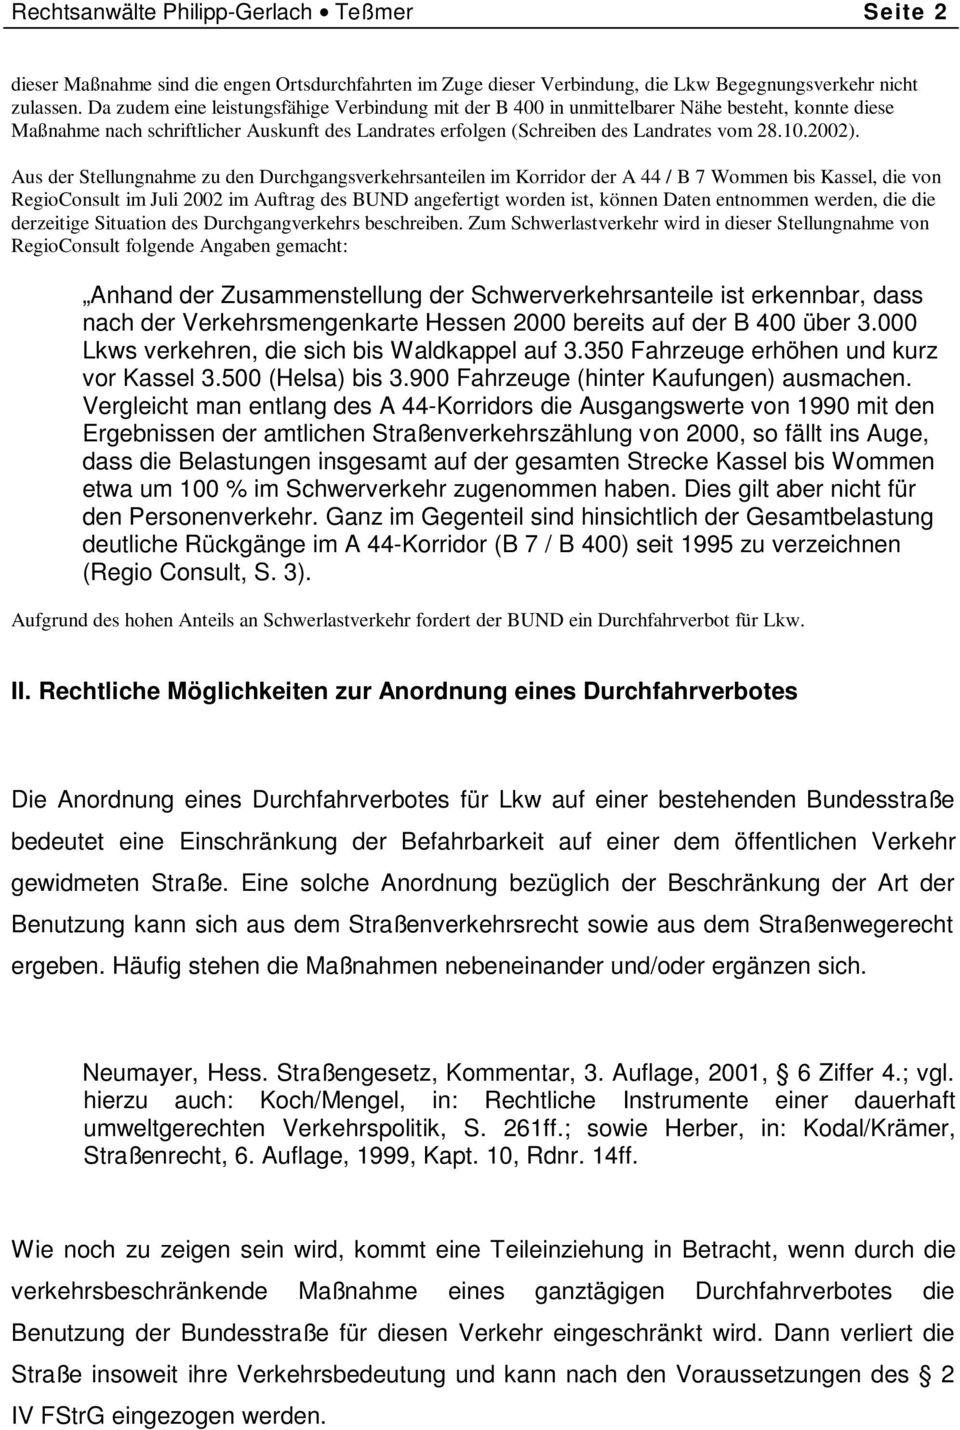 Aus der Stellungnahme zu den Durchgangsverkehrsanteilen im Korridor der A 44 / B 7 Wommen bis Kassel, die von RegioConsult im Juli 2002 im Auftrag des BUND angefertigt worden ist, können Daten